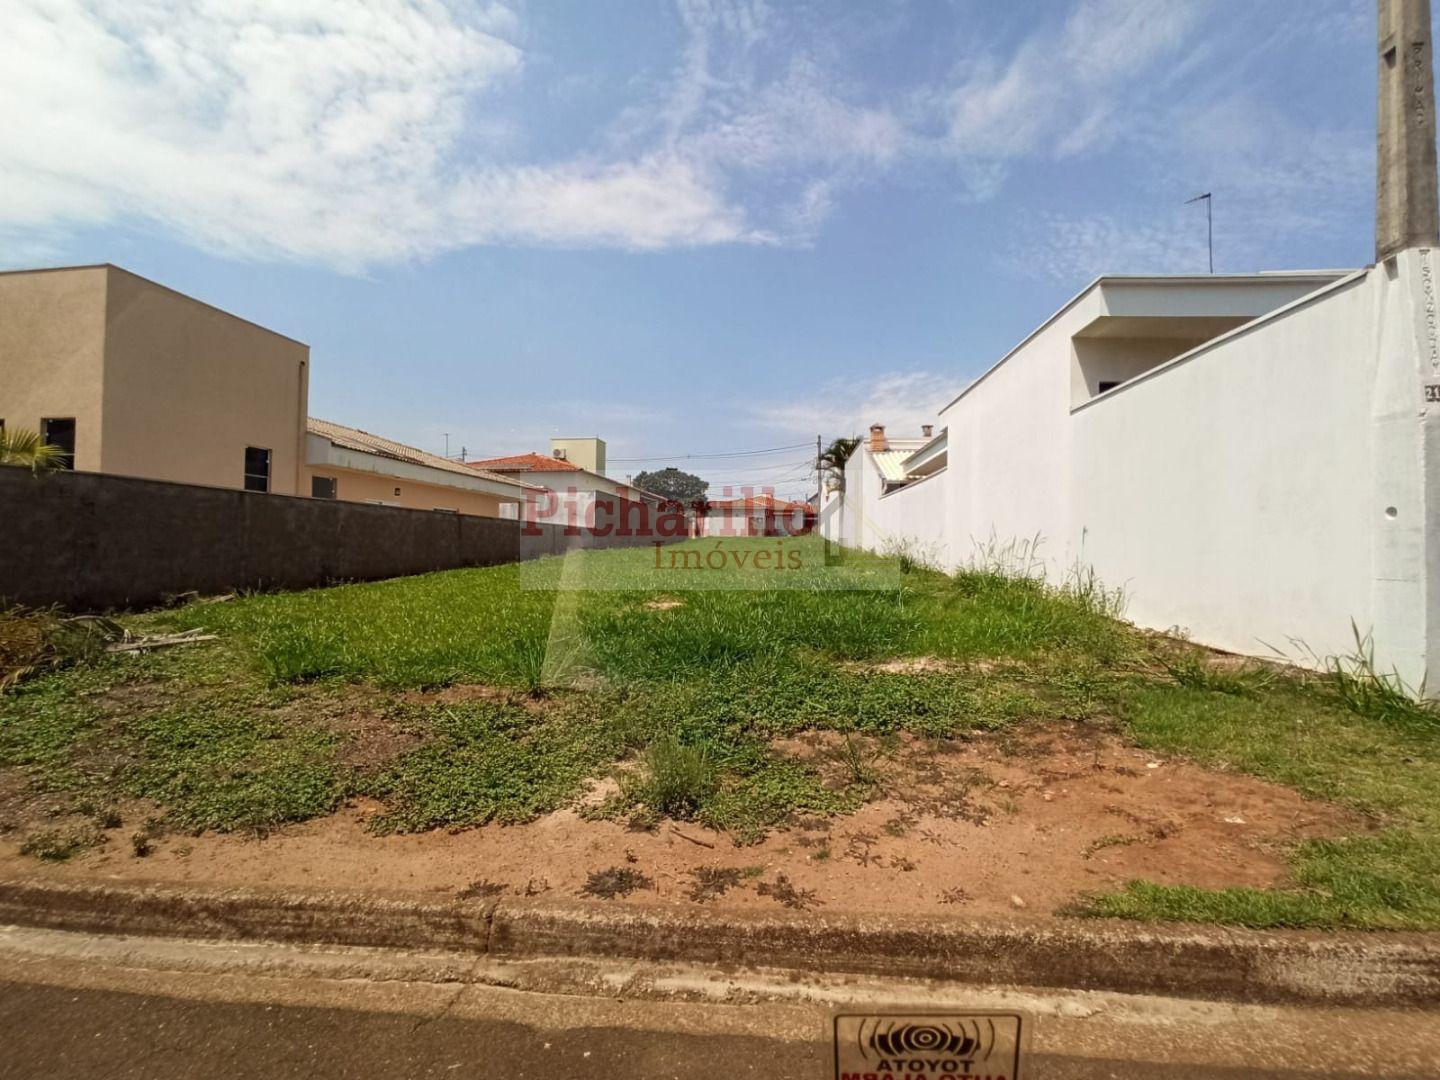 Terreno à venda, 325 m² - Residencial Eldorado - São Carlos/SP